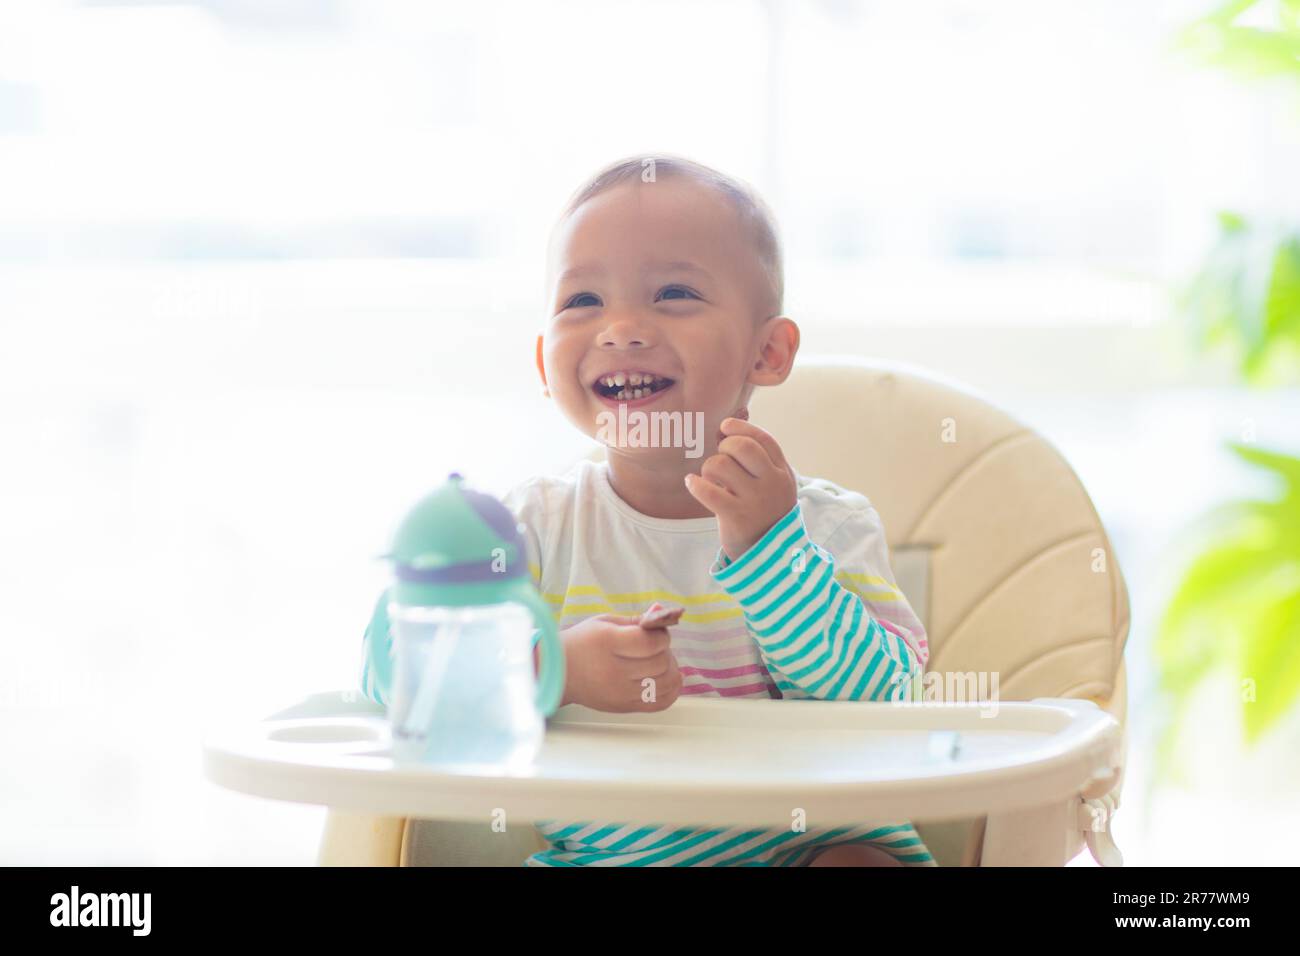 Bébé mangeant en chaise haute. Petit garçon asiatique avec boisson et déjeuner. Sevrage des nourrissons et introduction d'aliments solides. Enfant dans la cuisine blanche ensoleillée. Banque D'Images